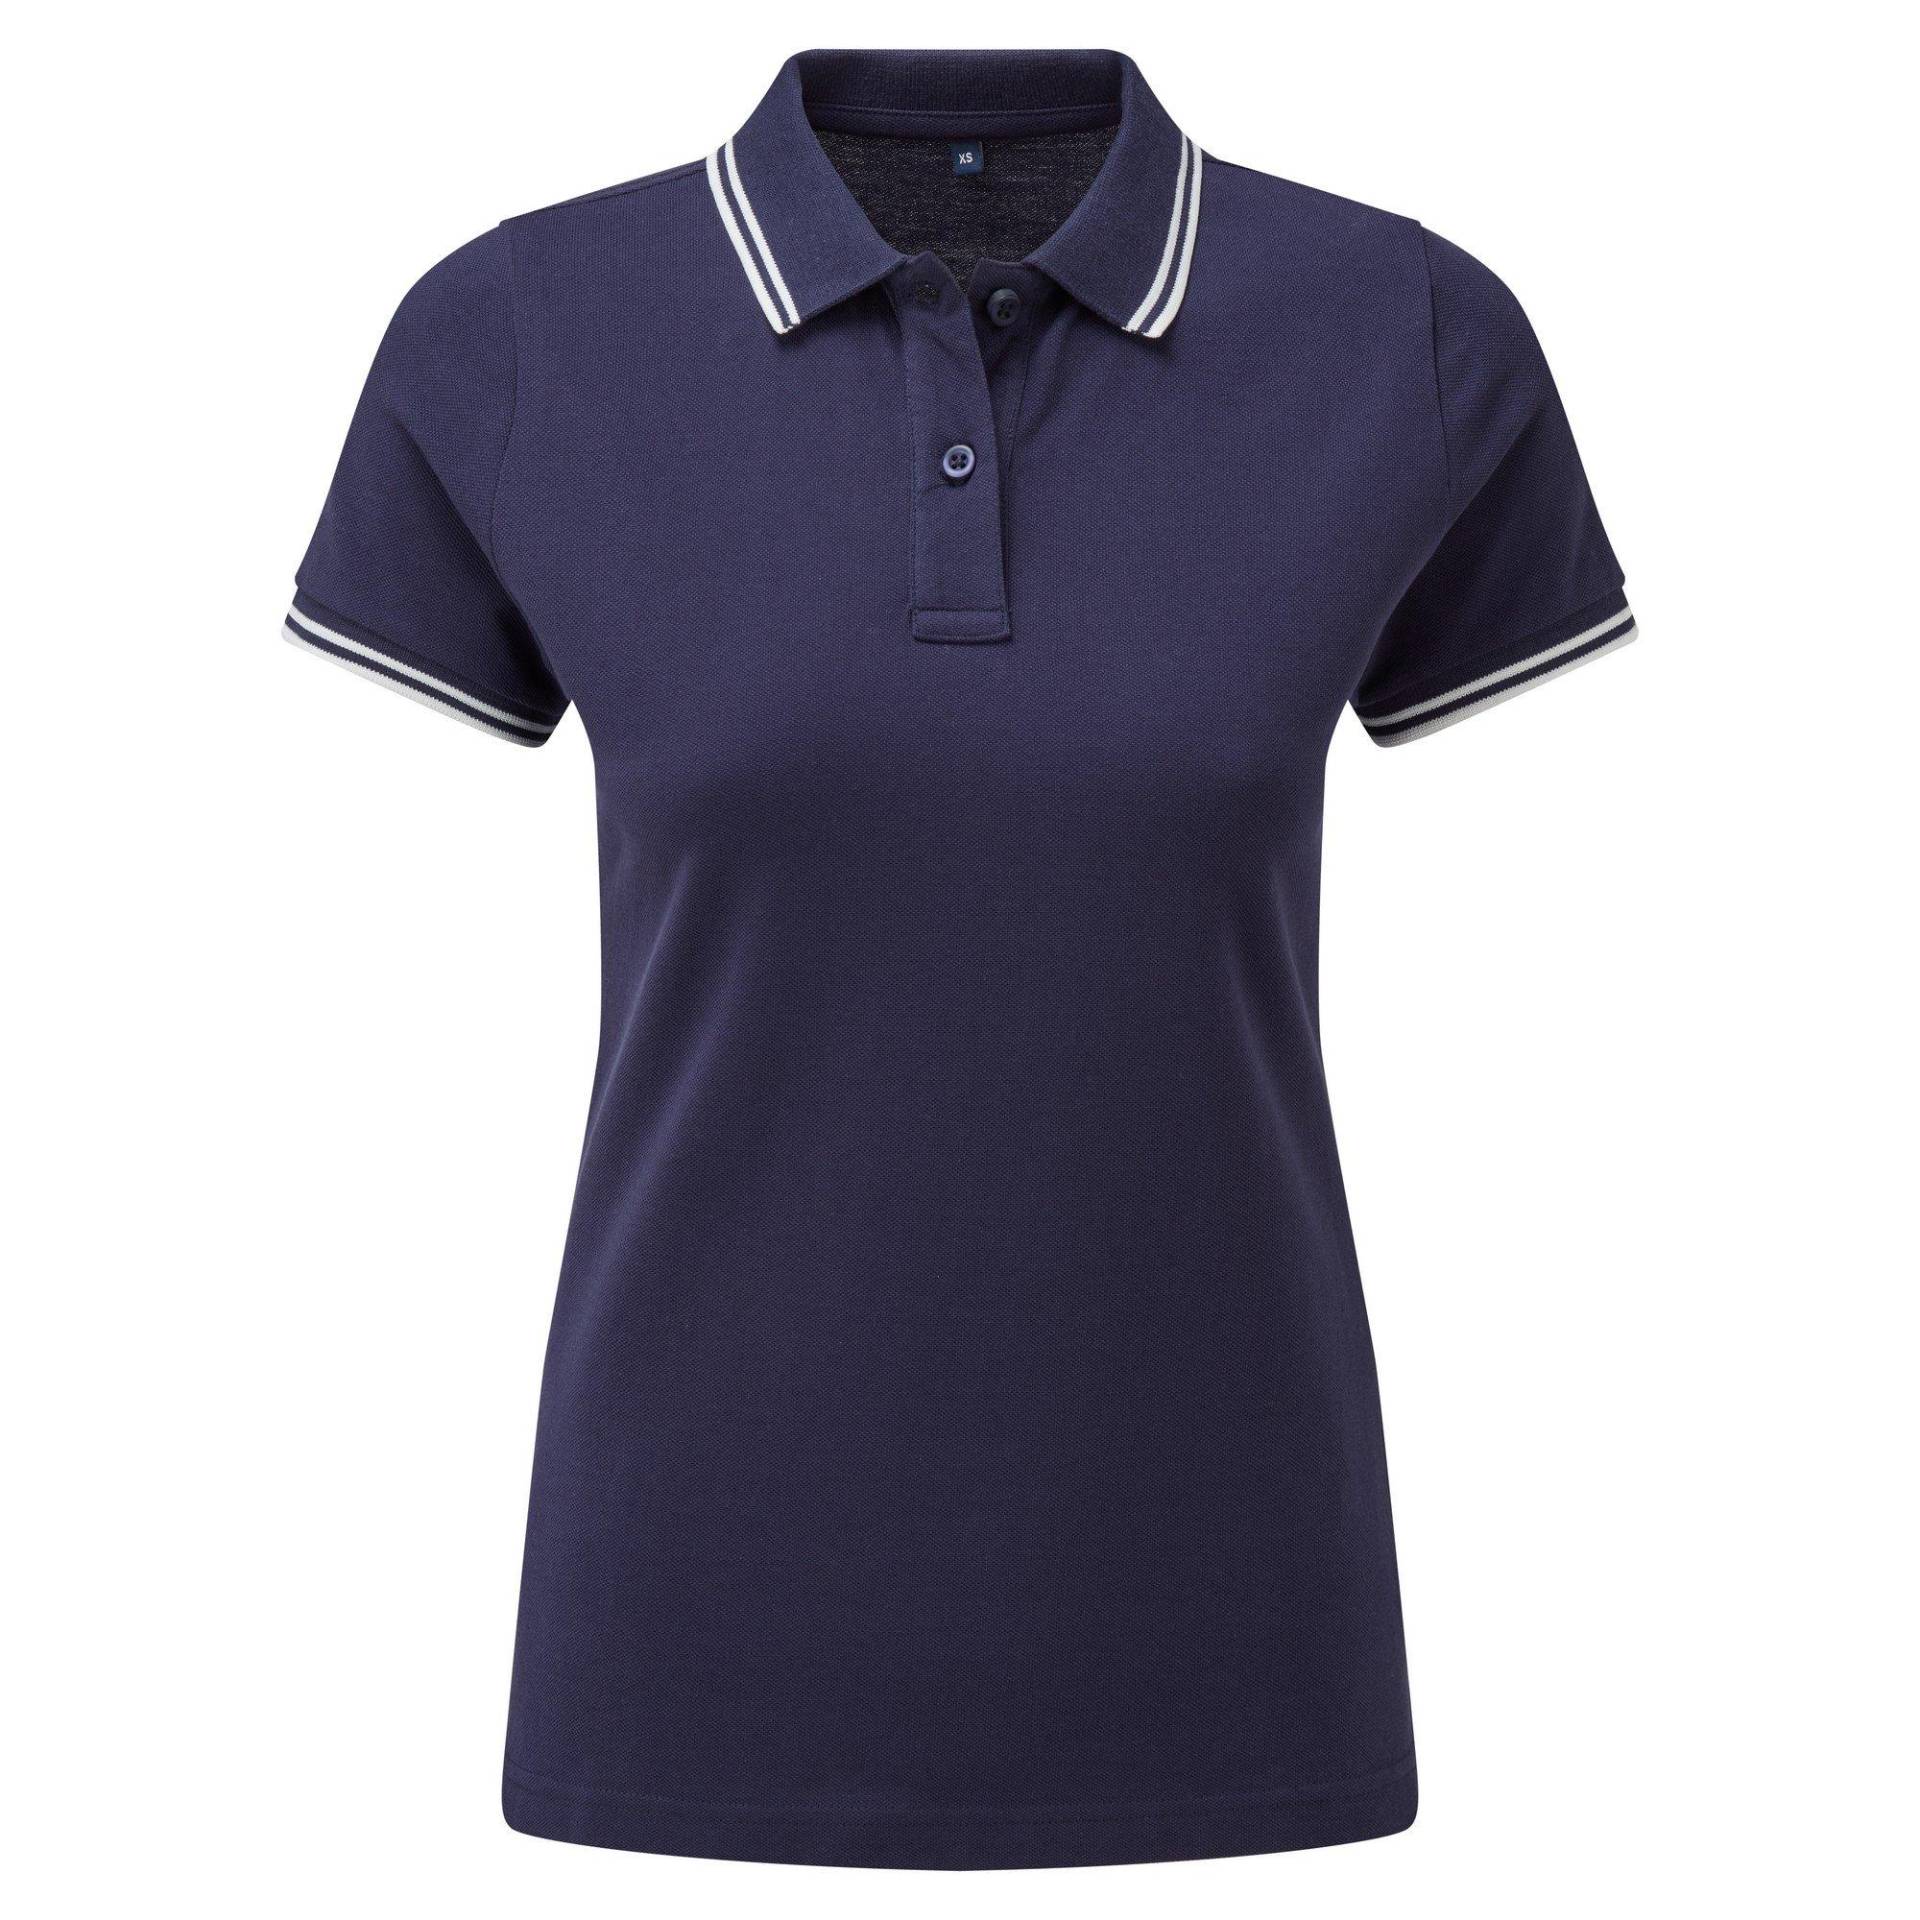 Poloshirt Mit Kontrastfarbenen Streifen Damen Marine L von Asquith & Fox